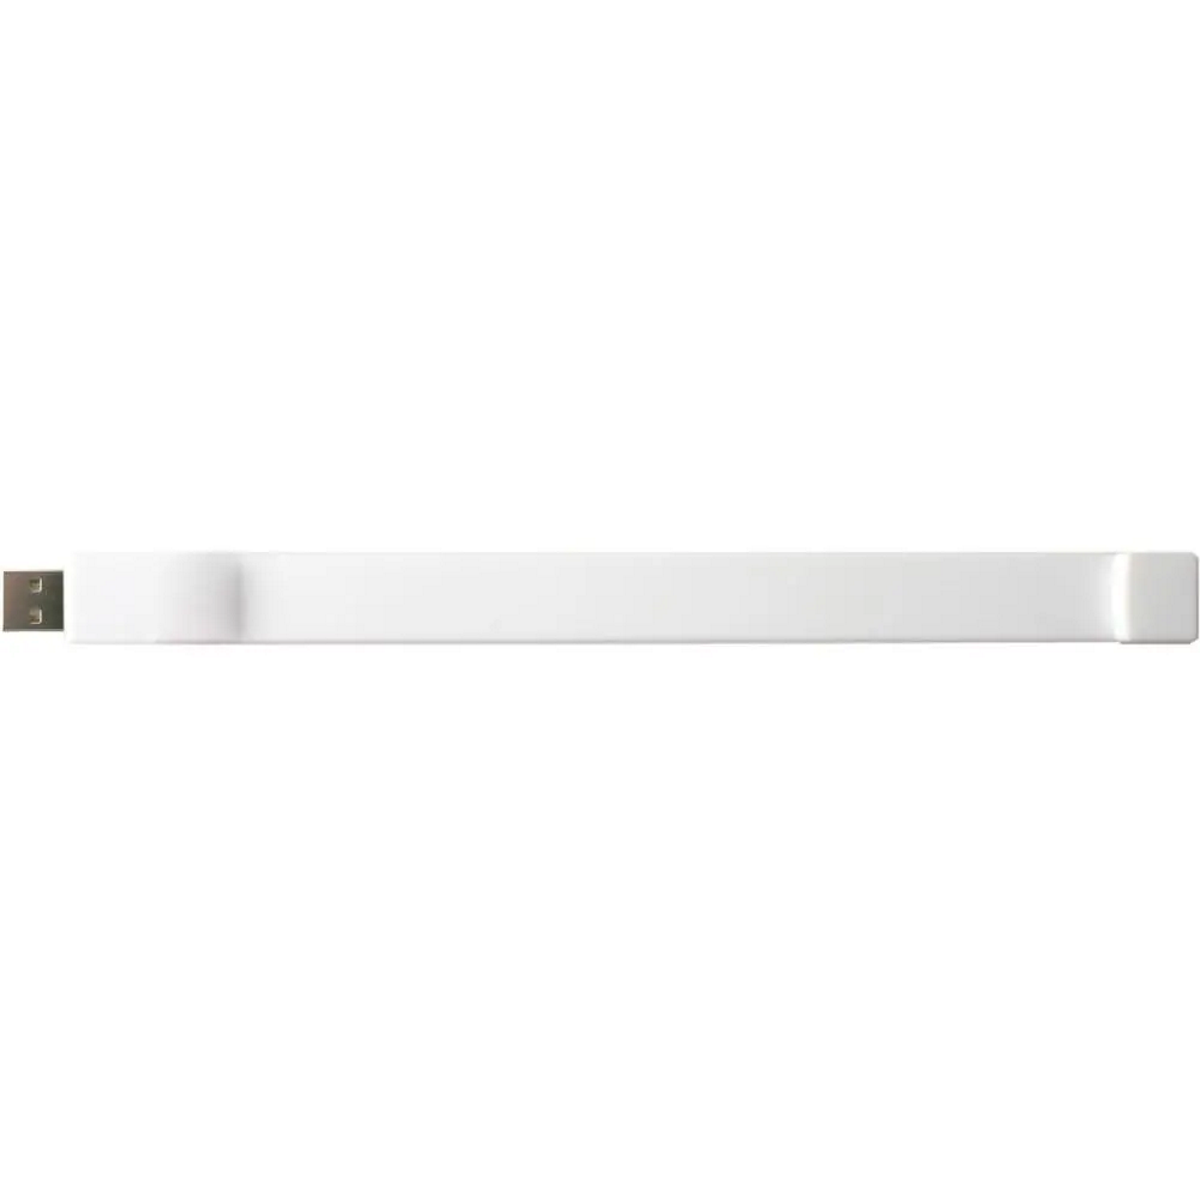 USB GERMANY Silicon-Armband (Weiß, 4 USB-Stick GB)